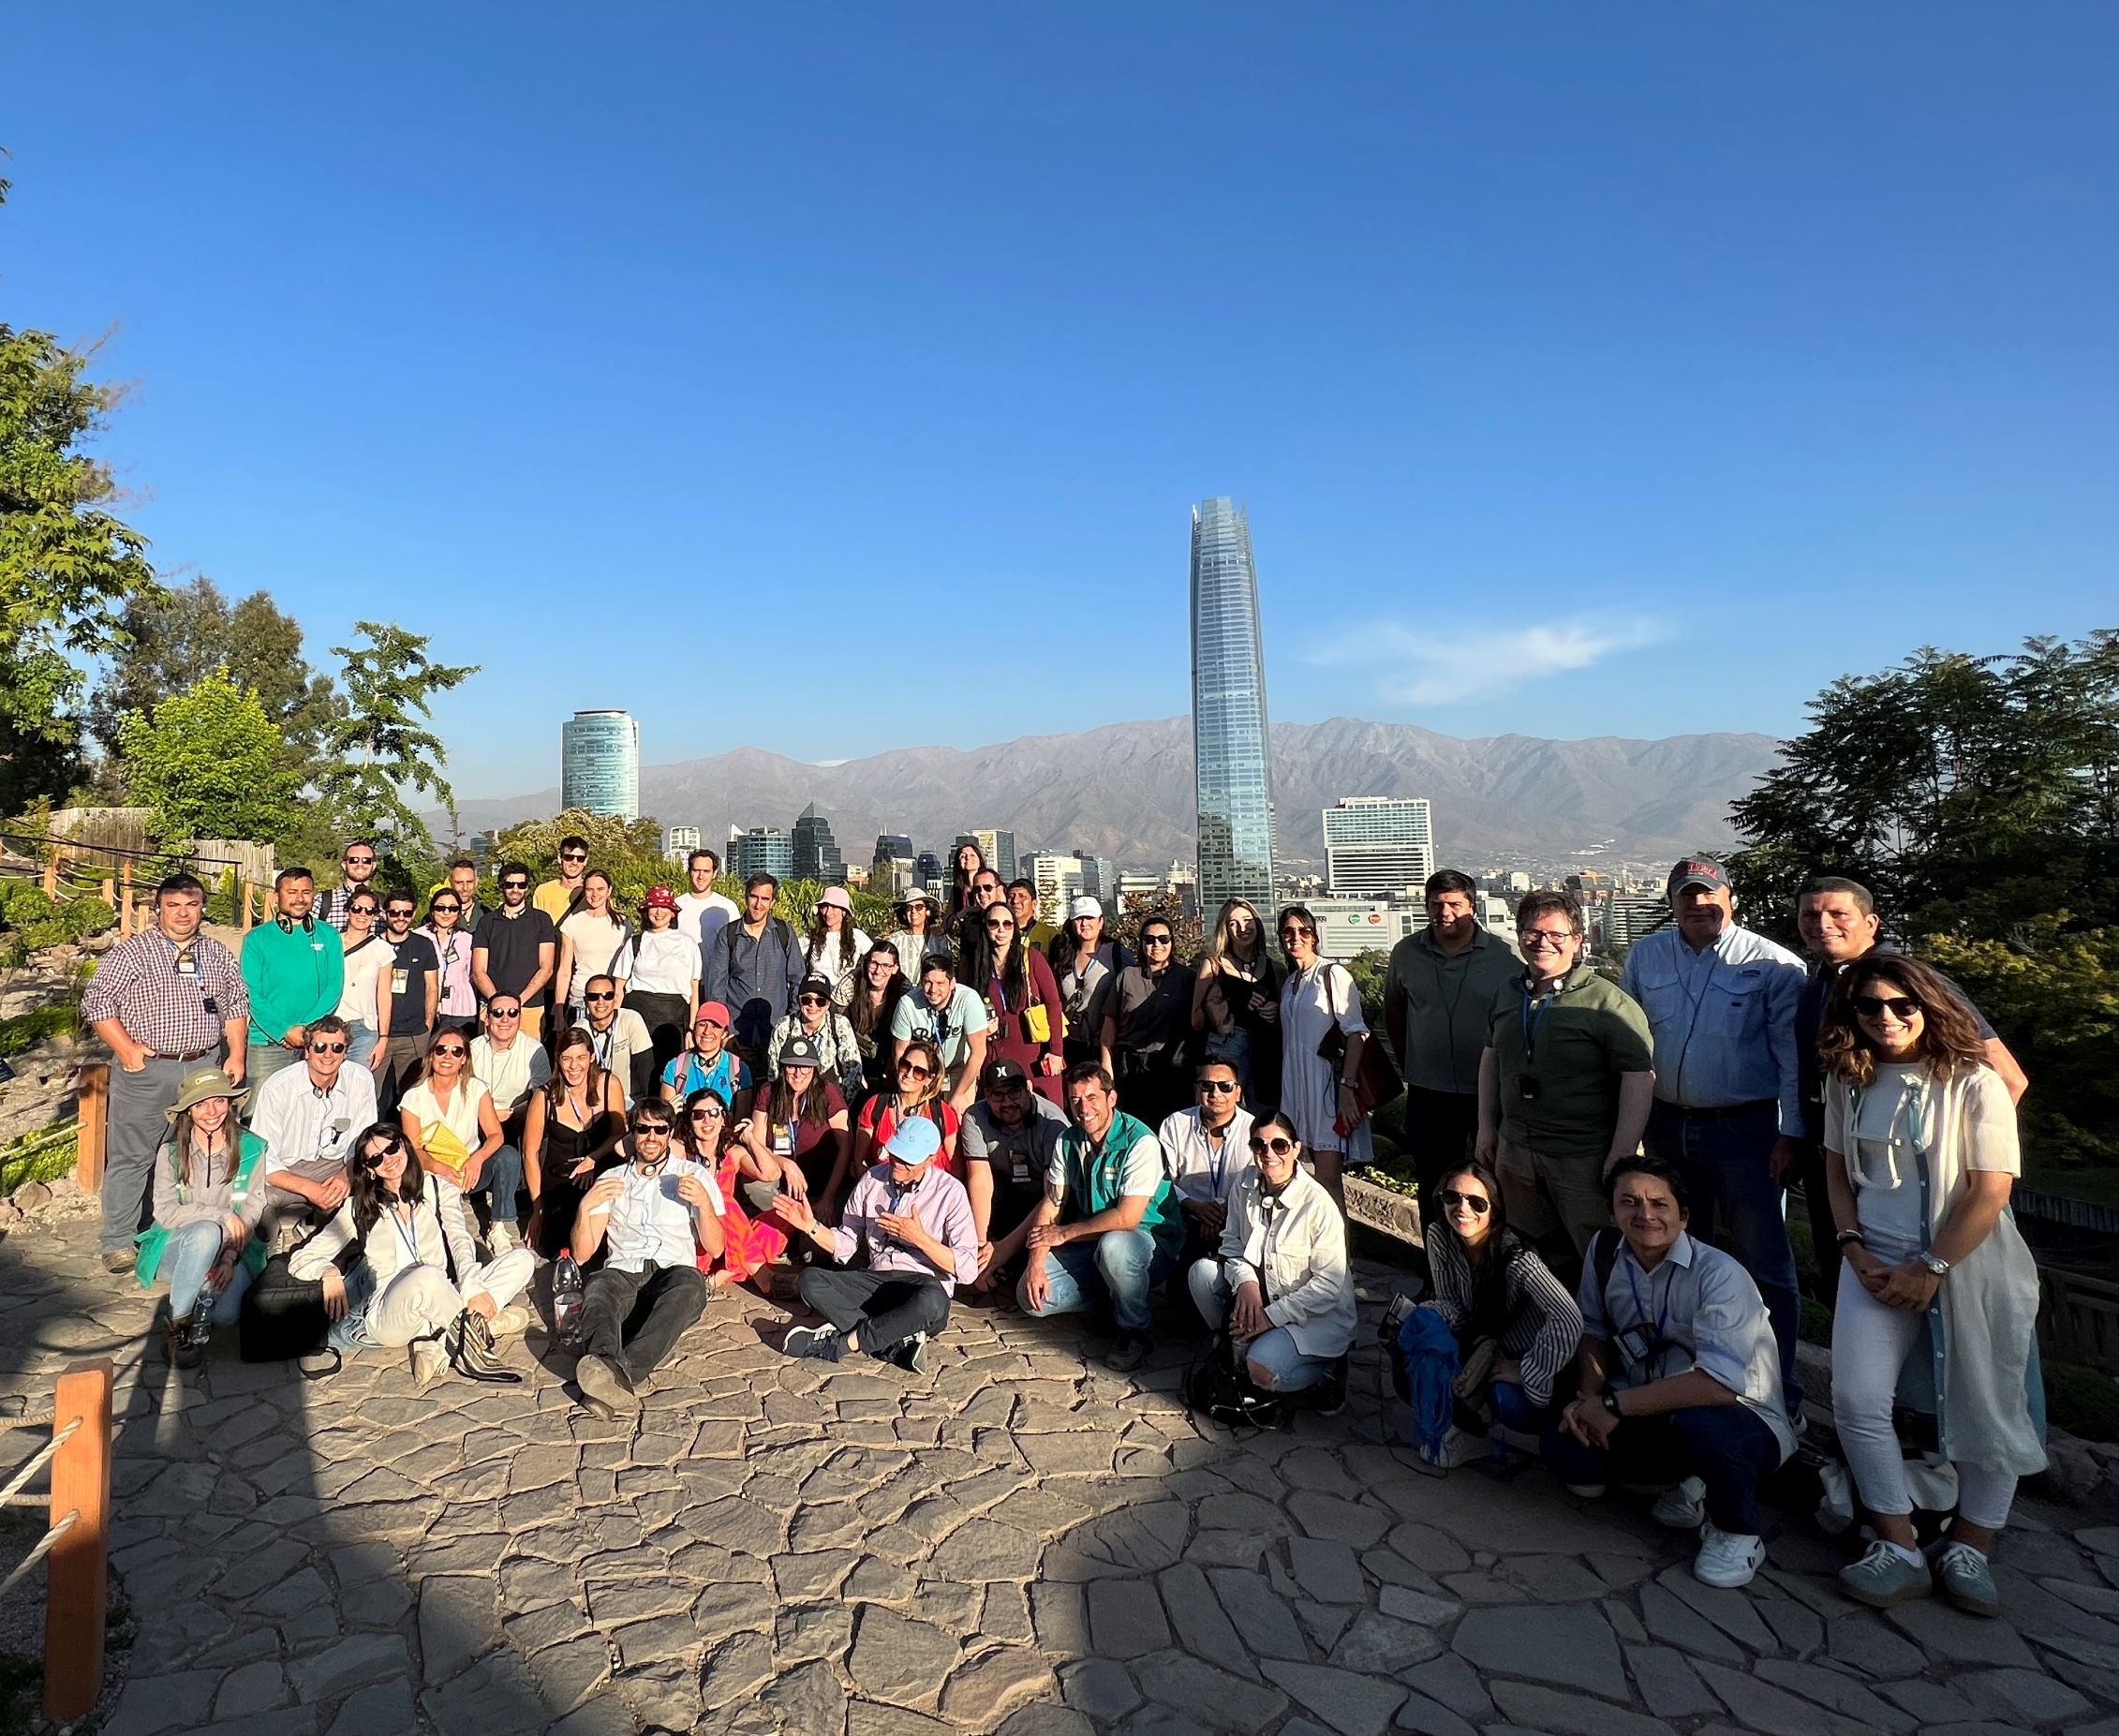 Les participants au parc métropolitain de Santiago